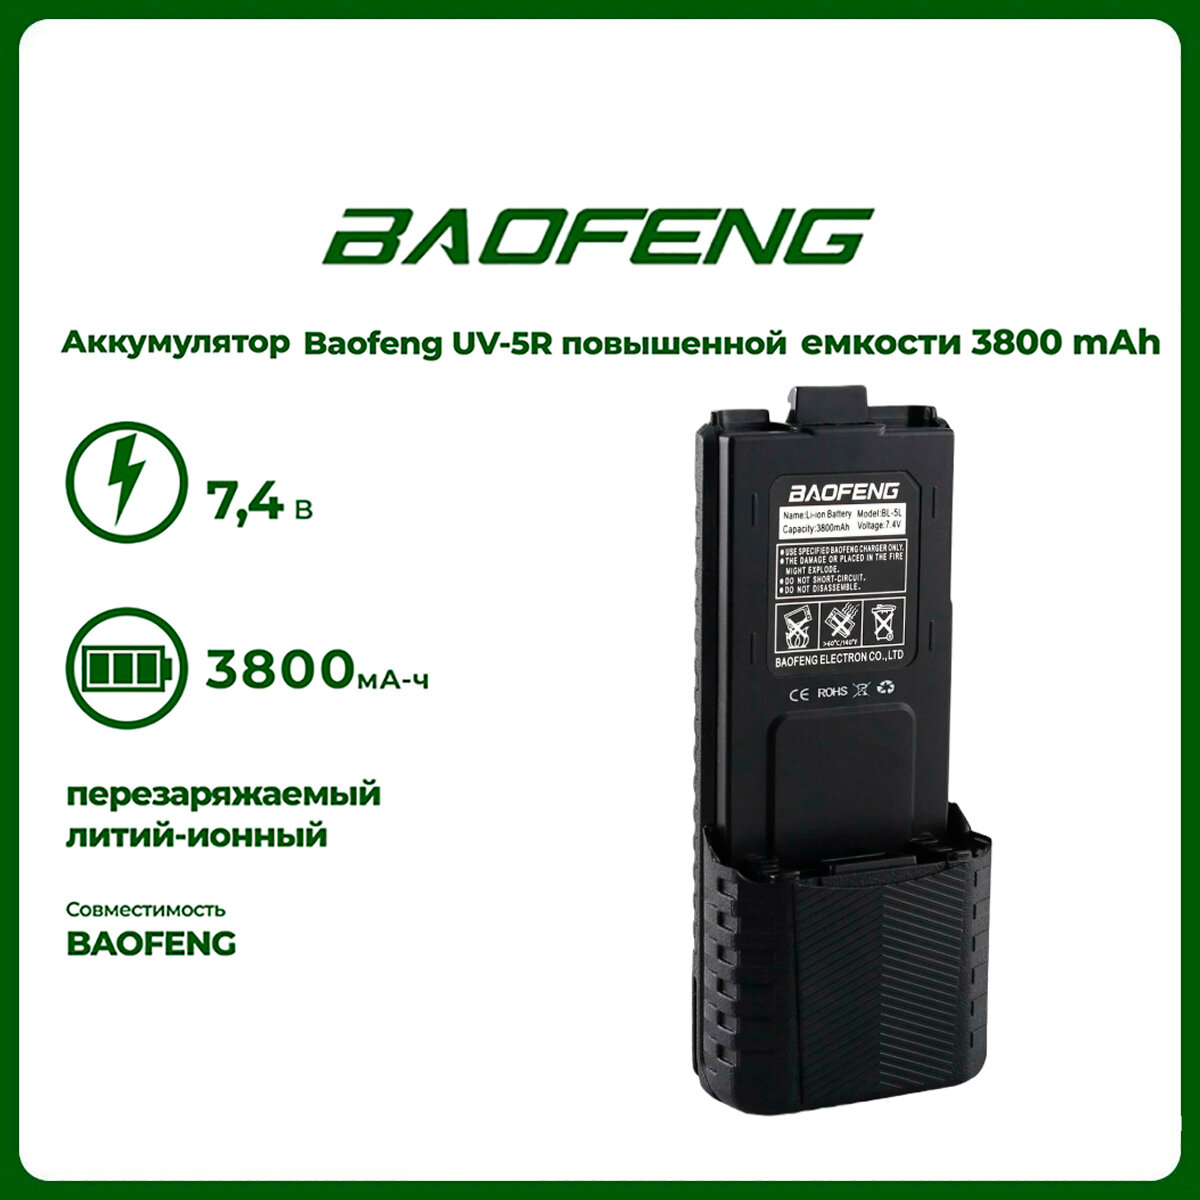 Аккумулятор повышенной емкости для рации Baofeng UV-5R (3800 mАч)